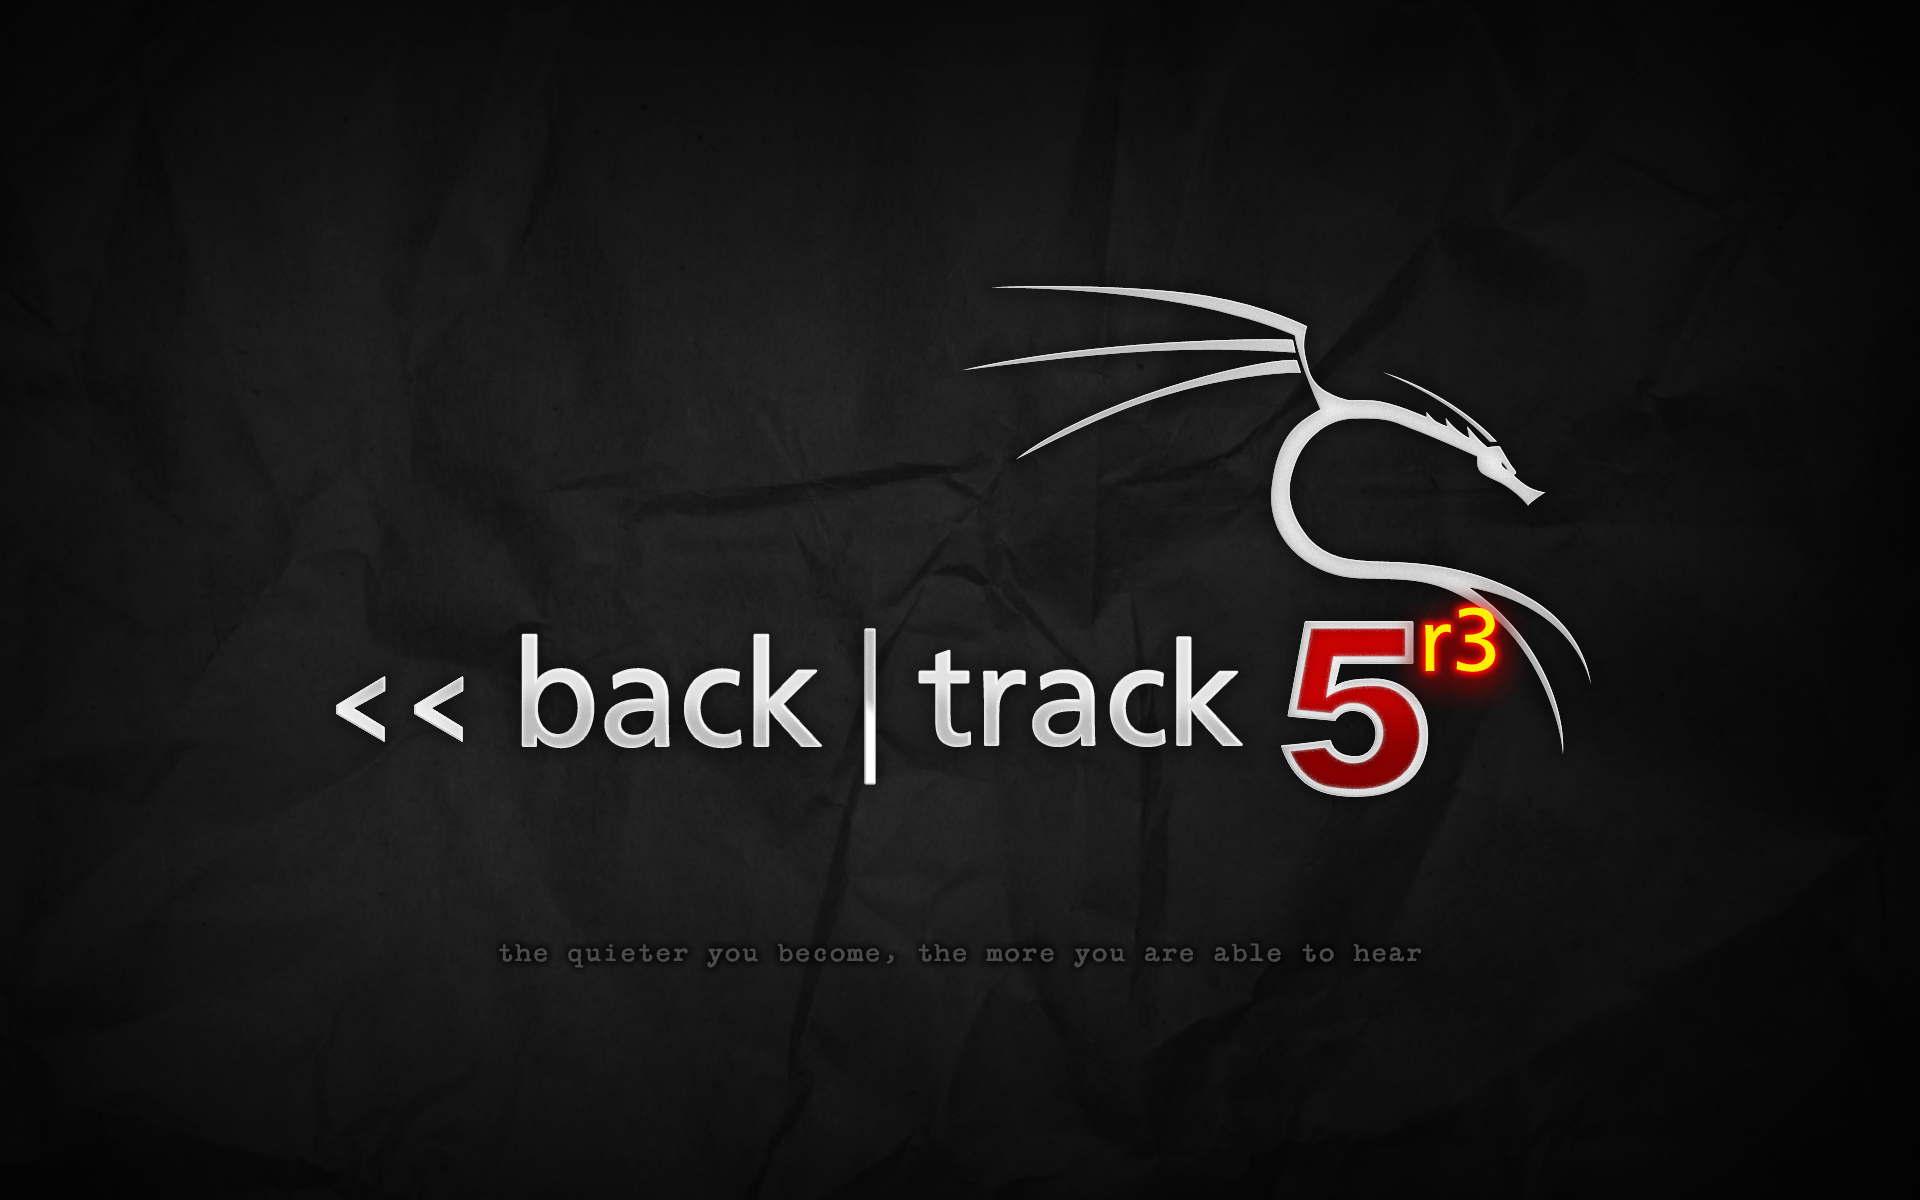 backtrack-5r3-grey.png